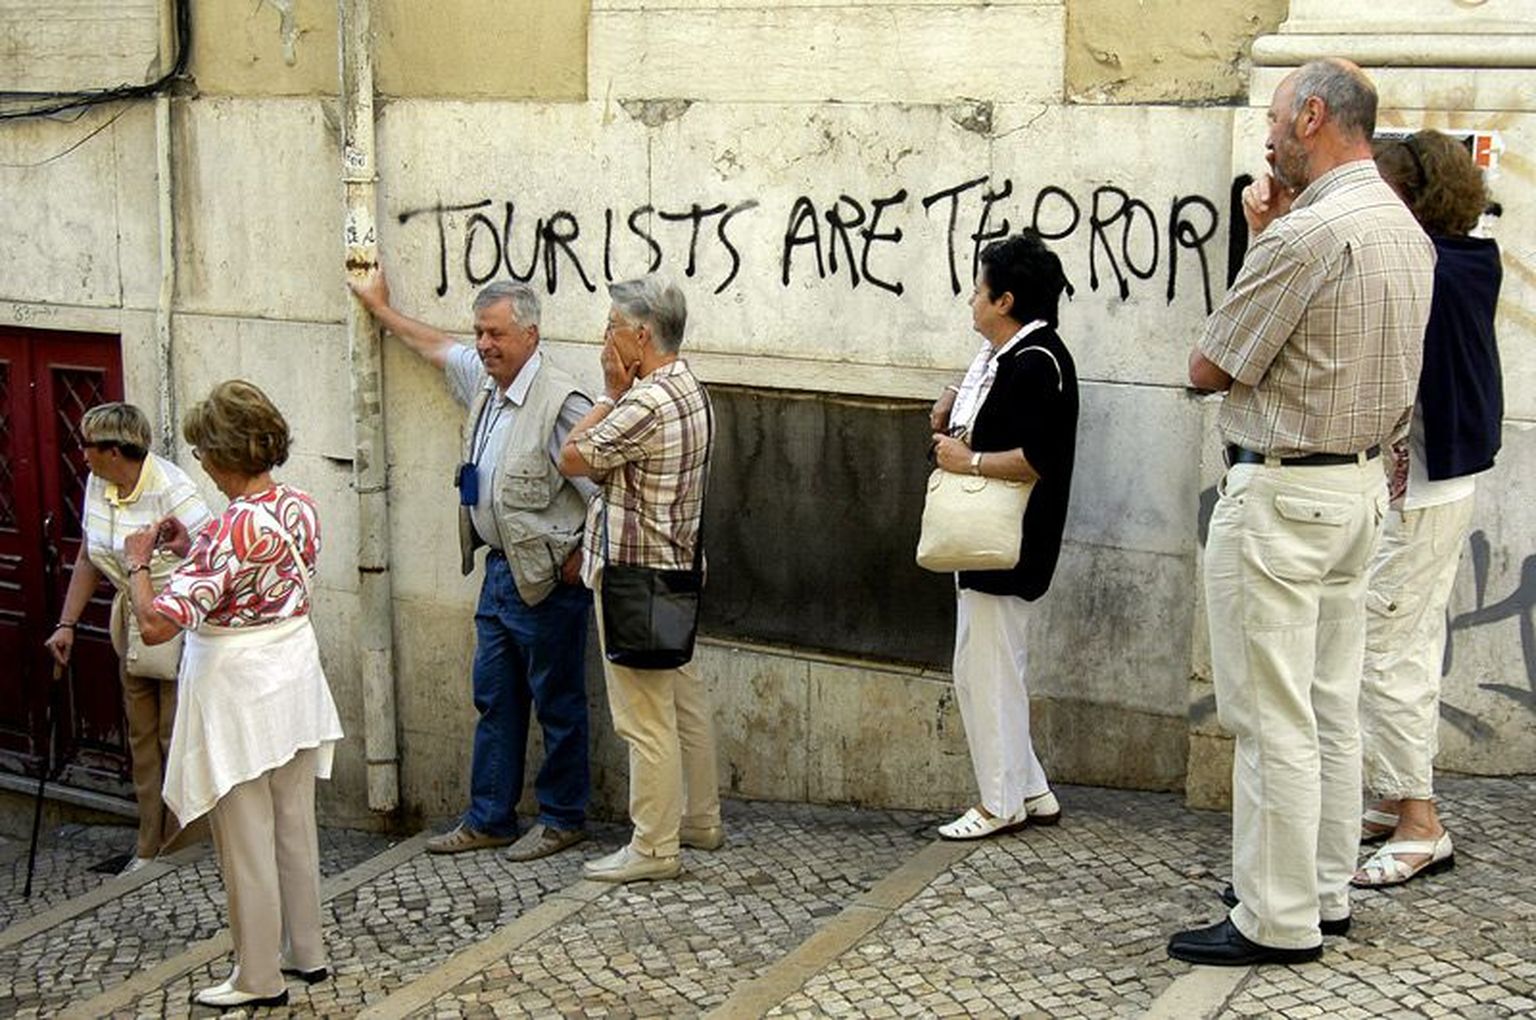 Lissabonis majaseinale kirjutatud arvamusavaldus turistide kohta.